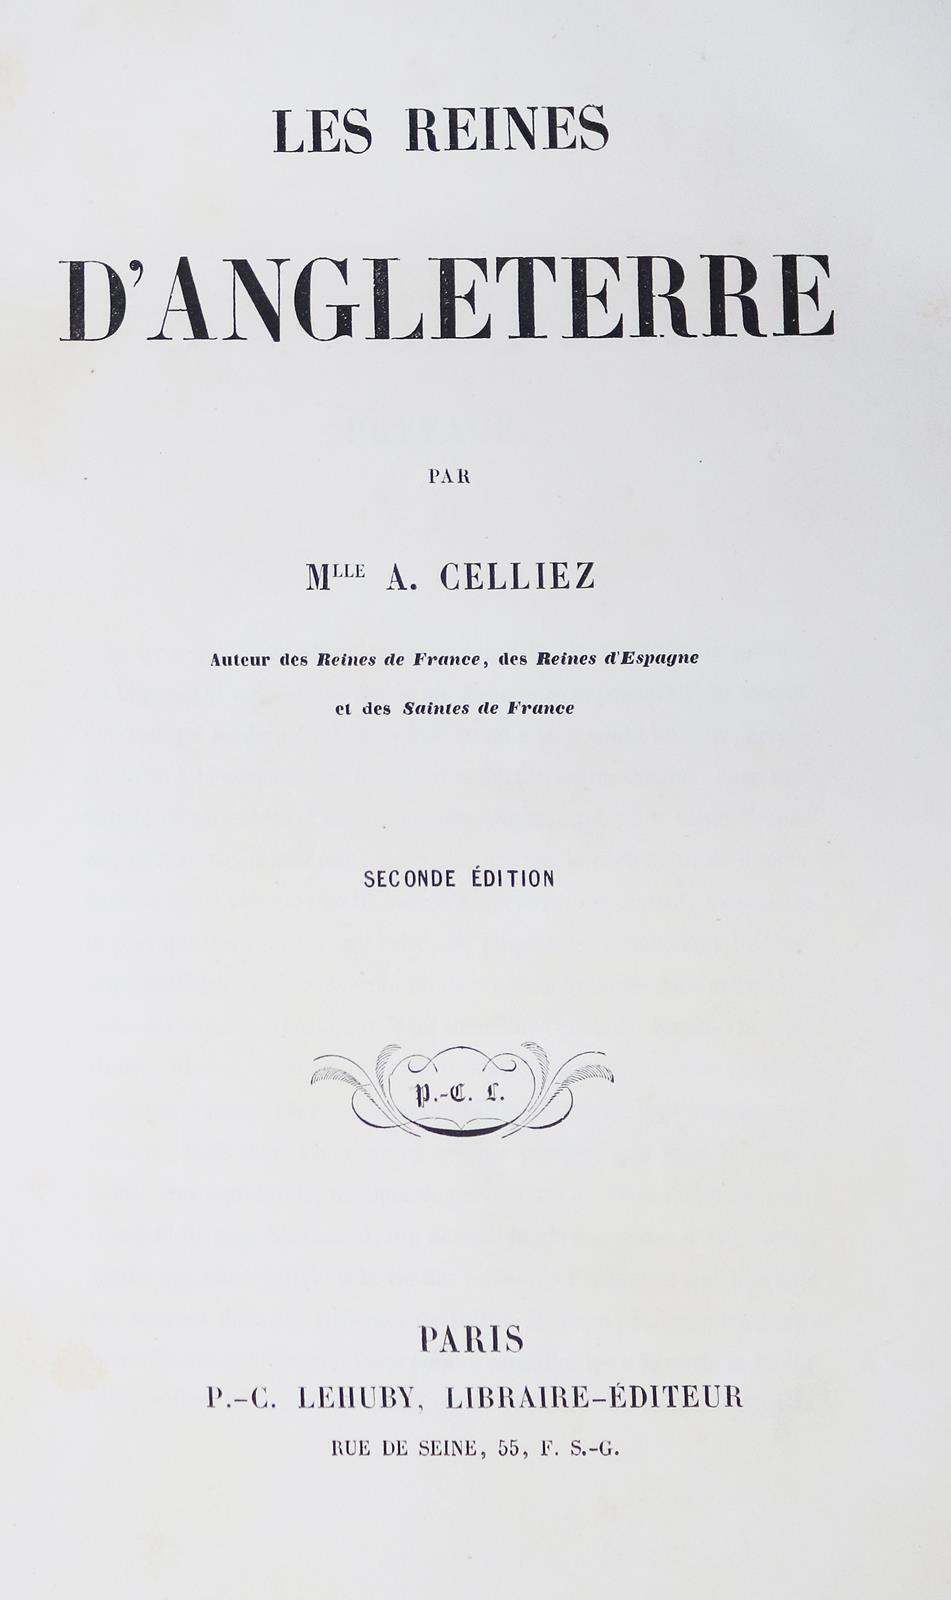 Celliez,A. | Bild Nr.1